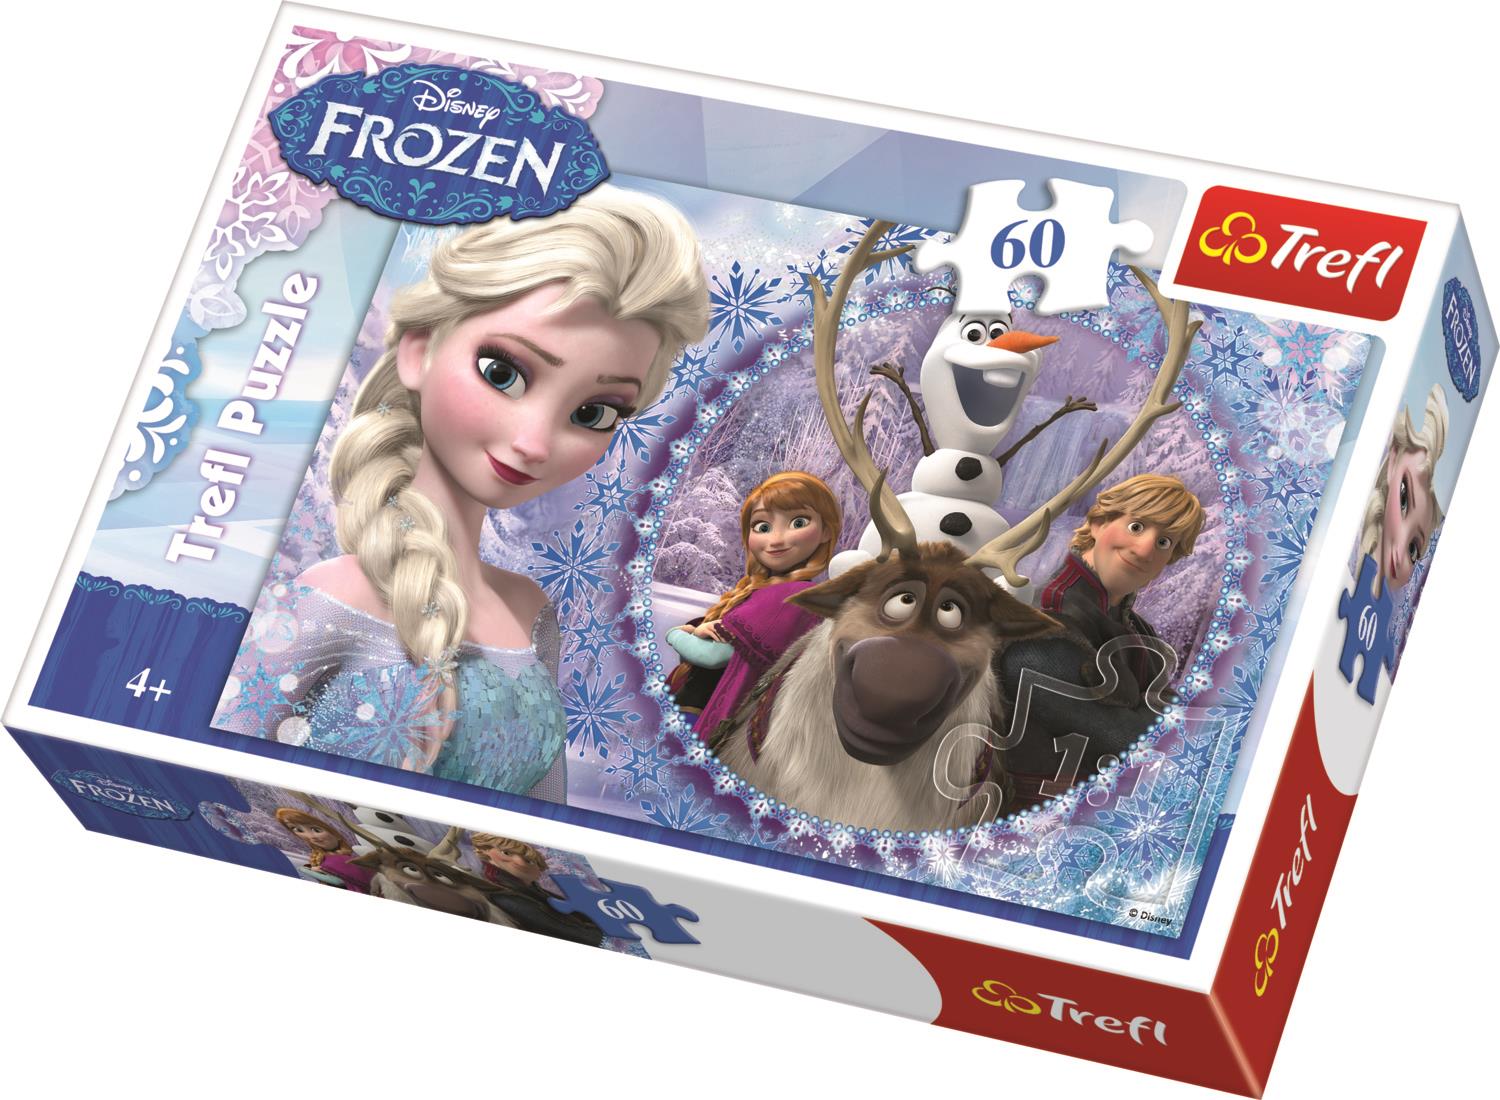 Trefl Çocuk Puzzle 17275 Frozen Friend From The Frozen Land, Disney 60 Parça Puzzle